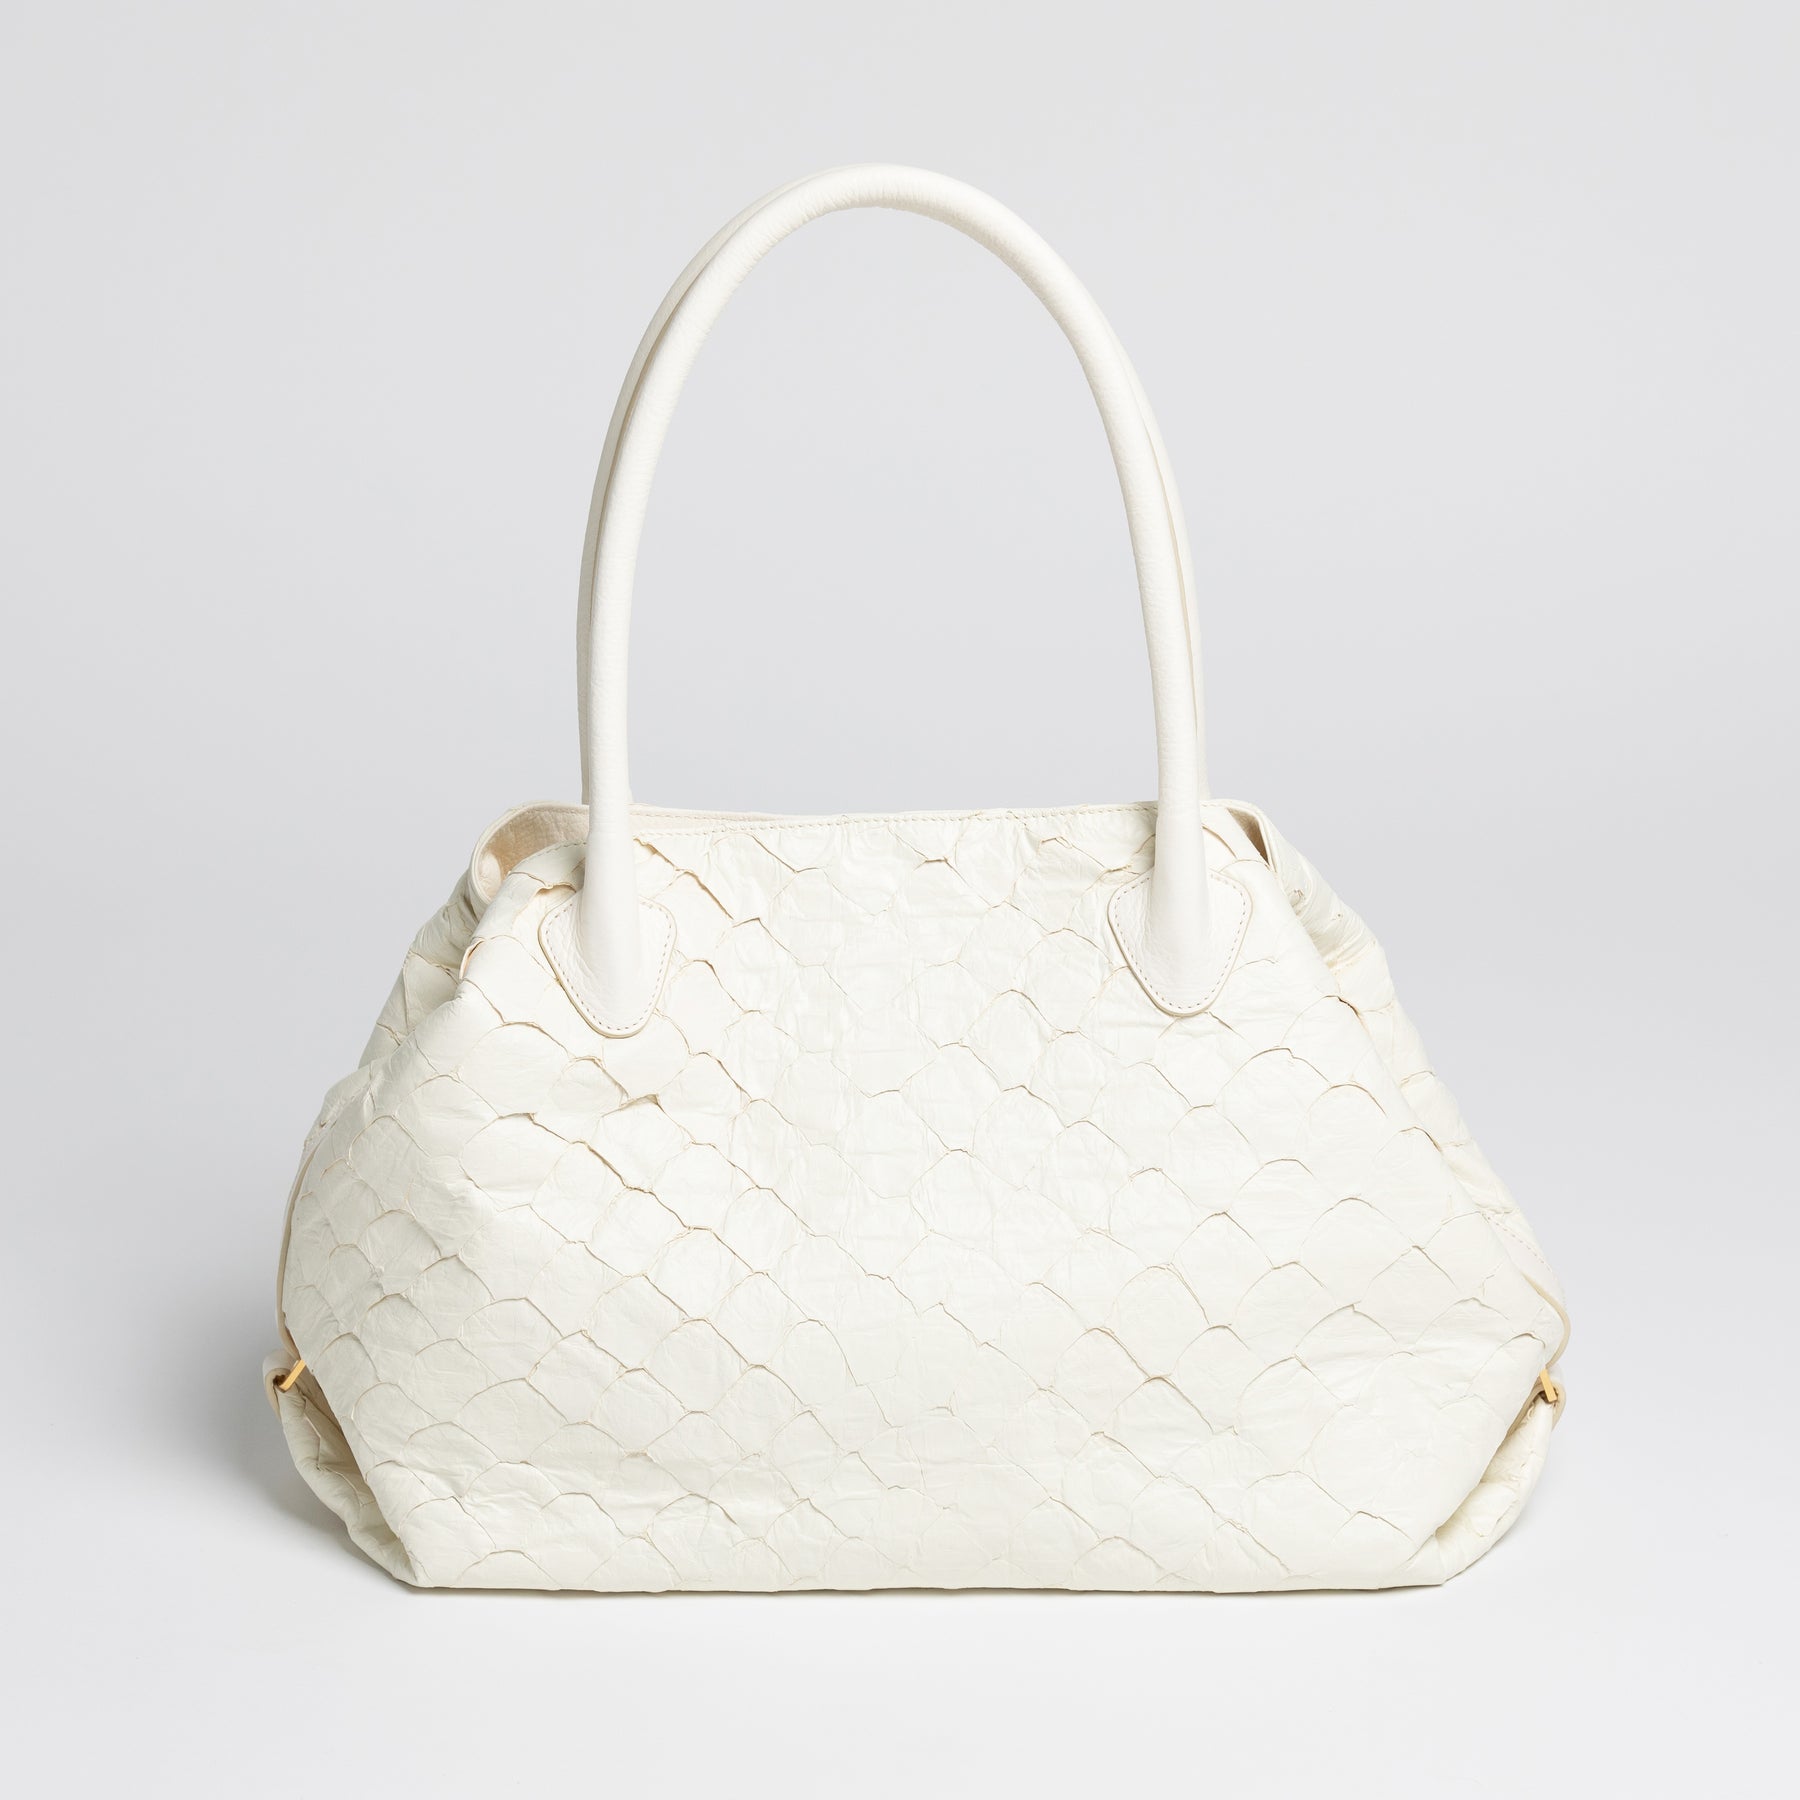 Fish Leather Handbag – BORGANB